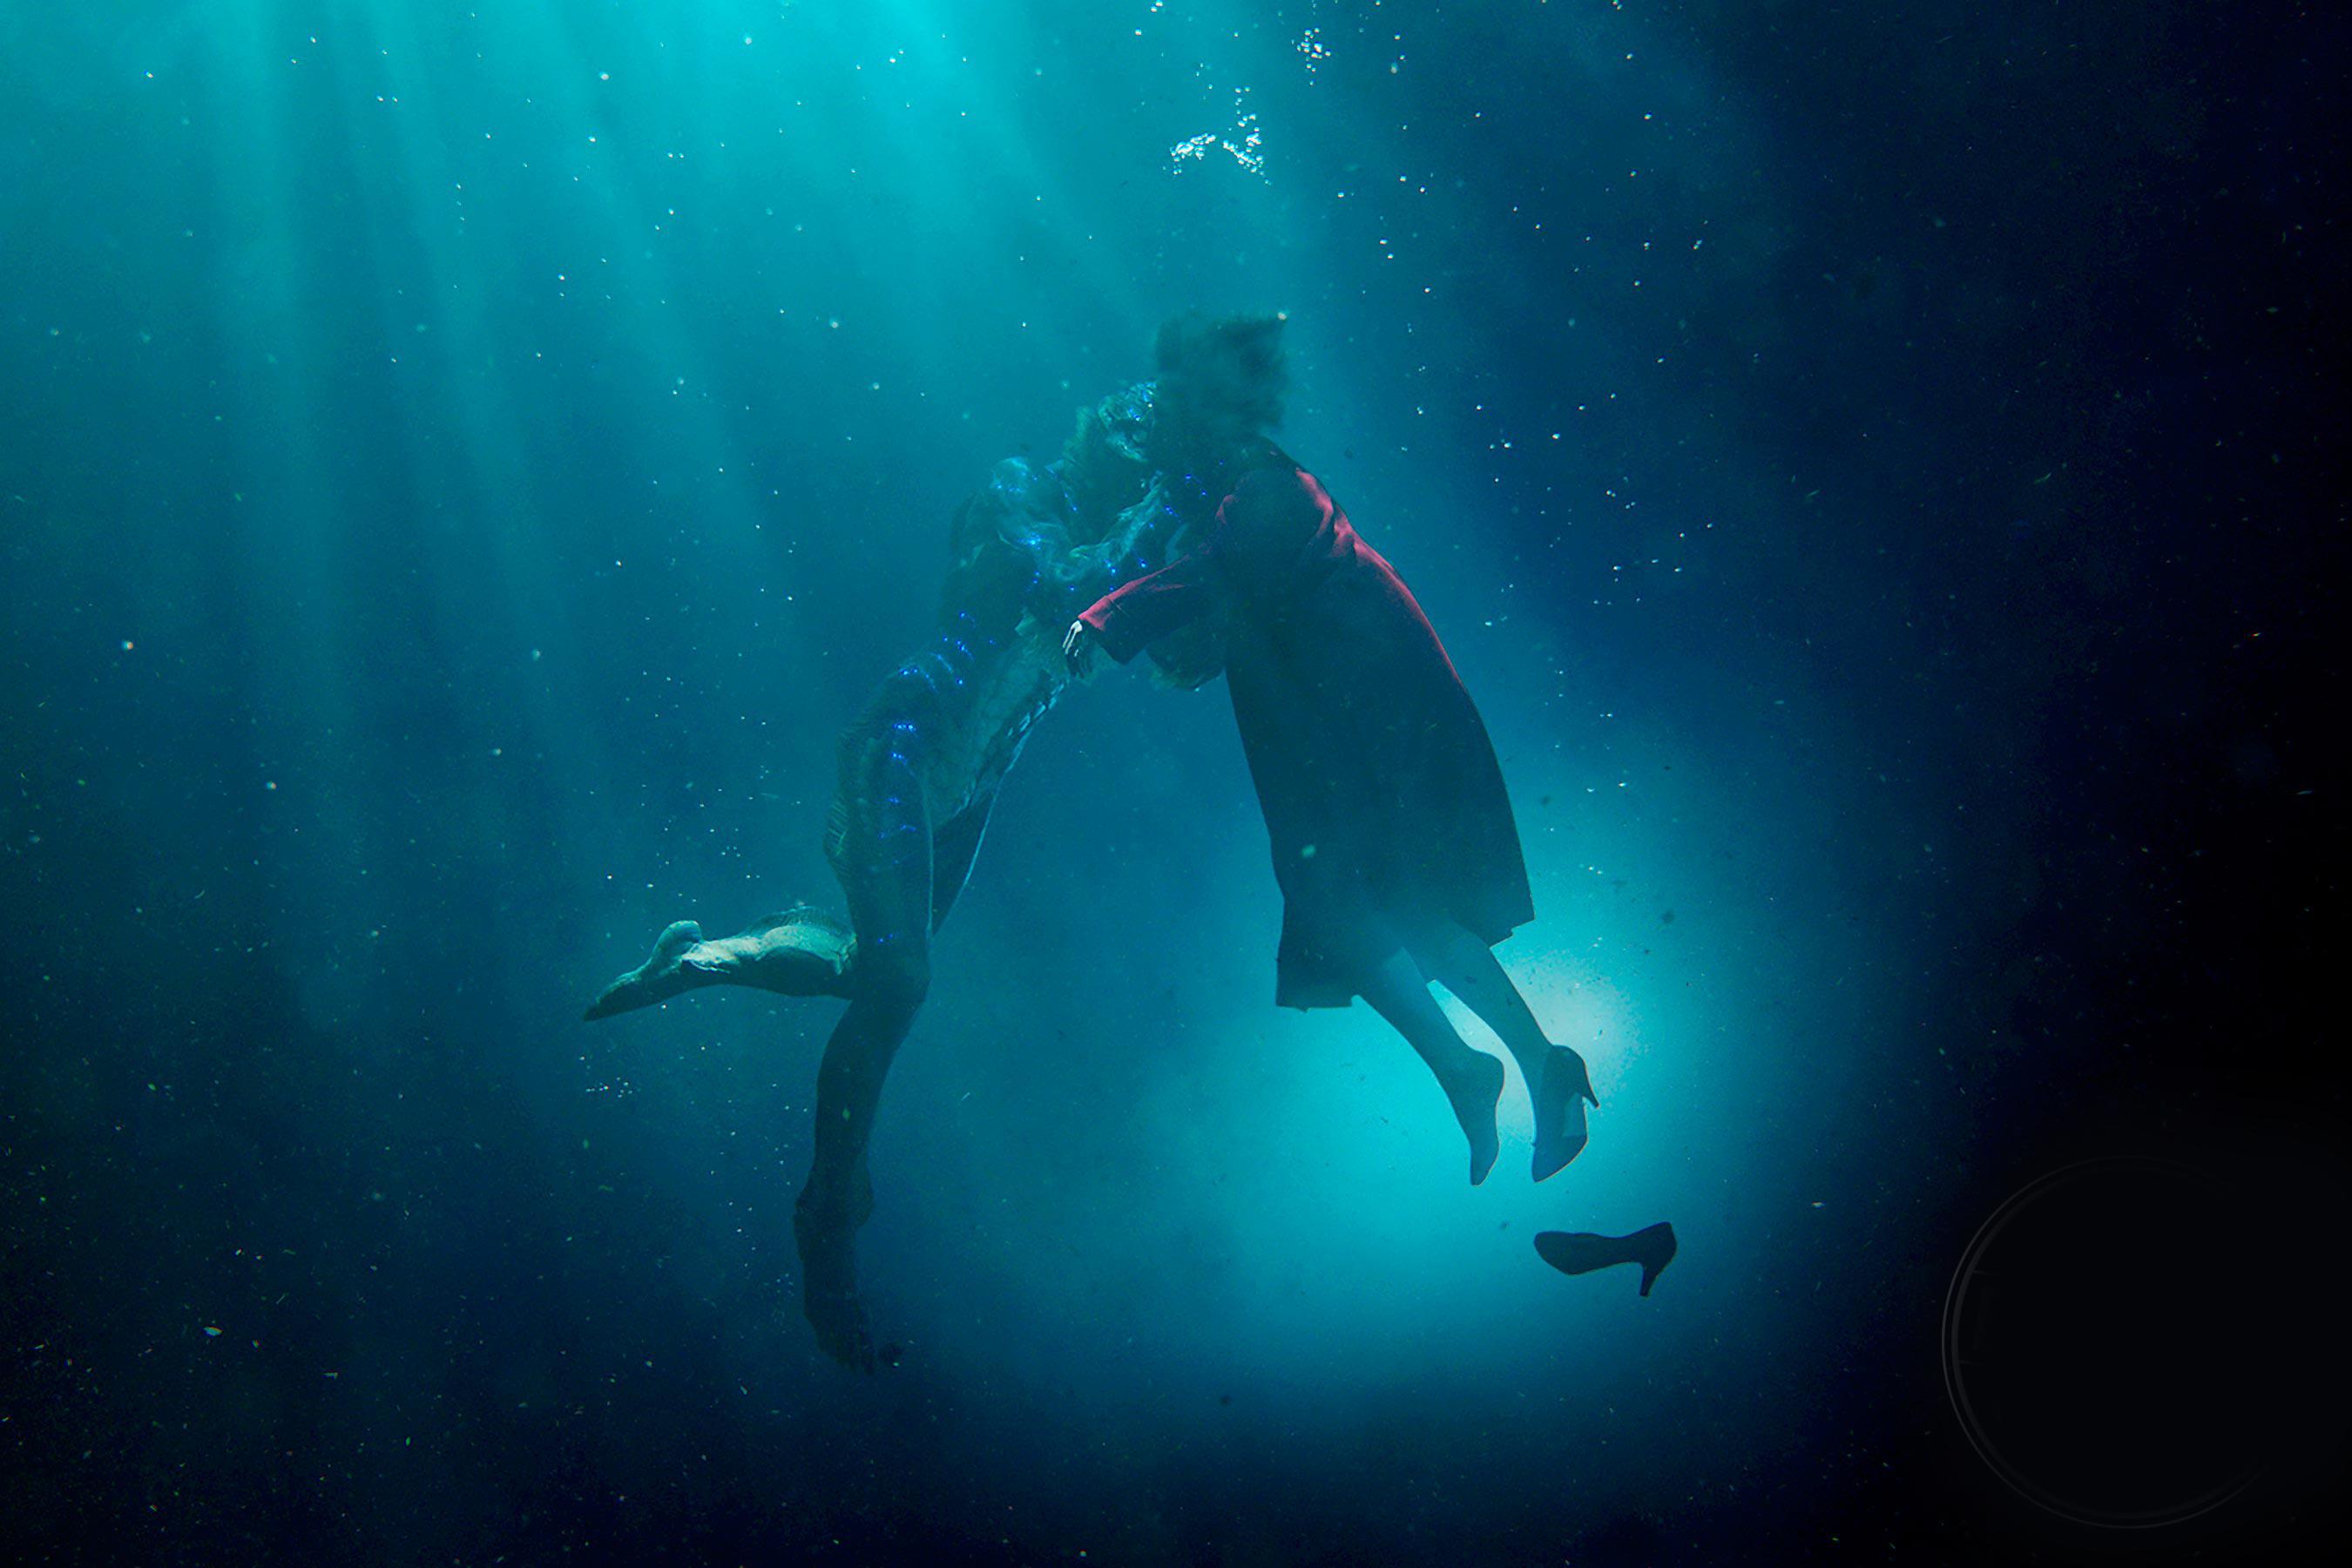 如何欣赏第90届奥斯卡最佳影片《水形物语》的海报设计？ - 知乎